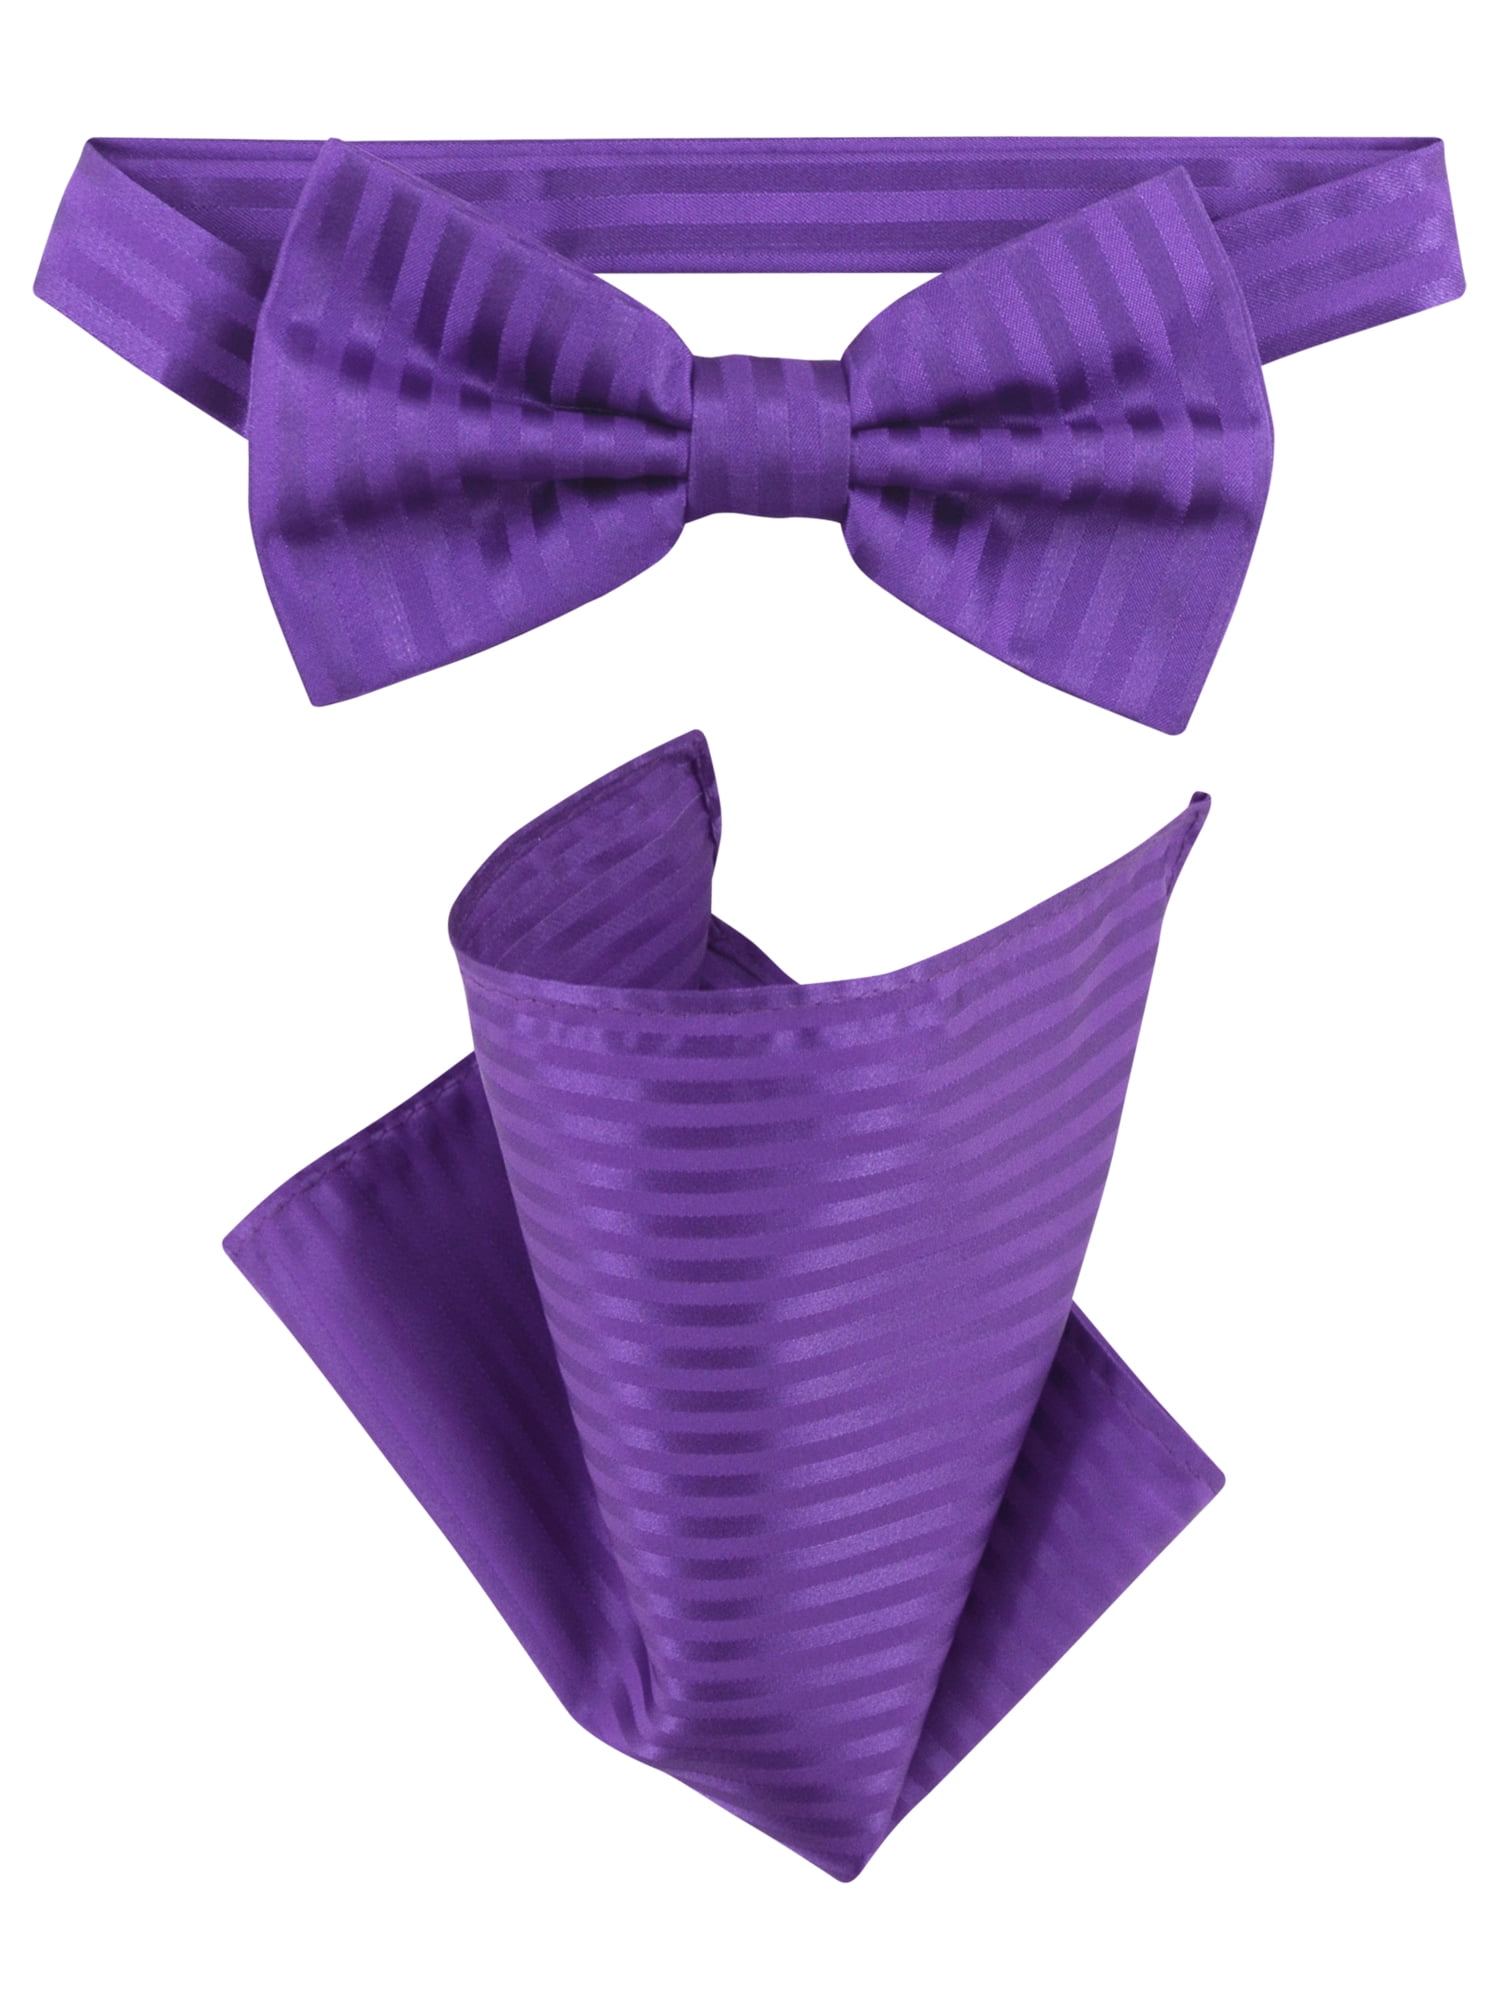 New in box Vesuvio Napoli men's self tie bow tie 100% silk formal party purple 